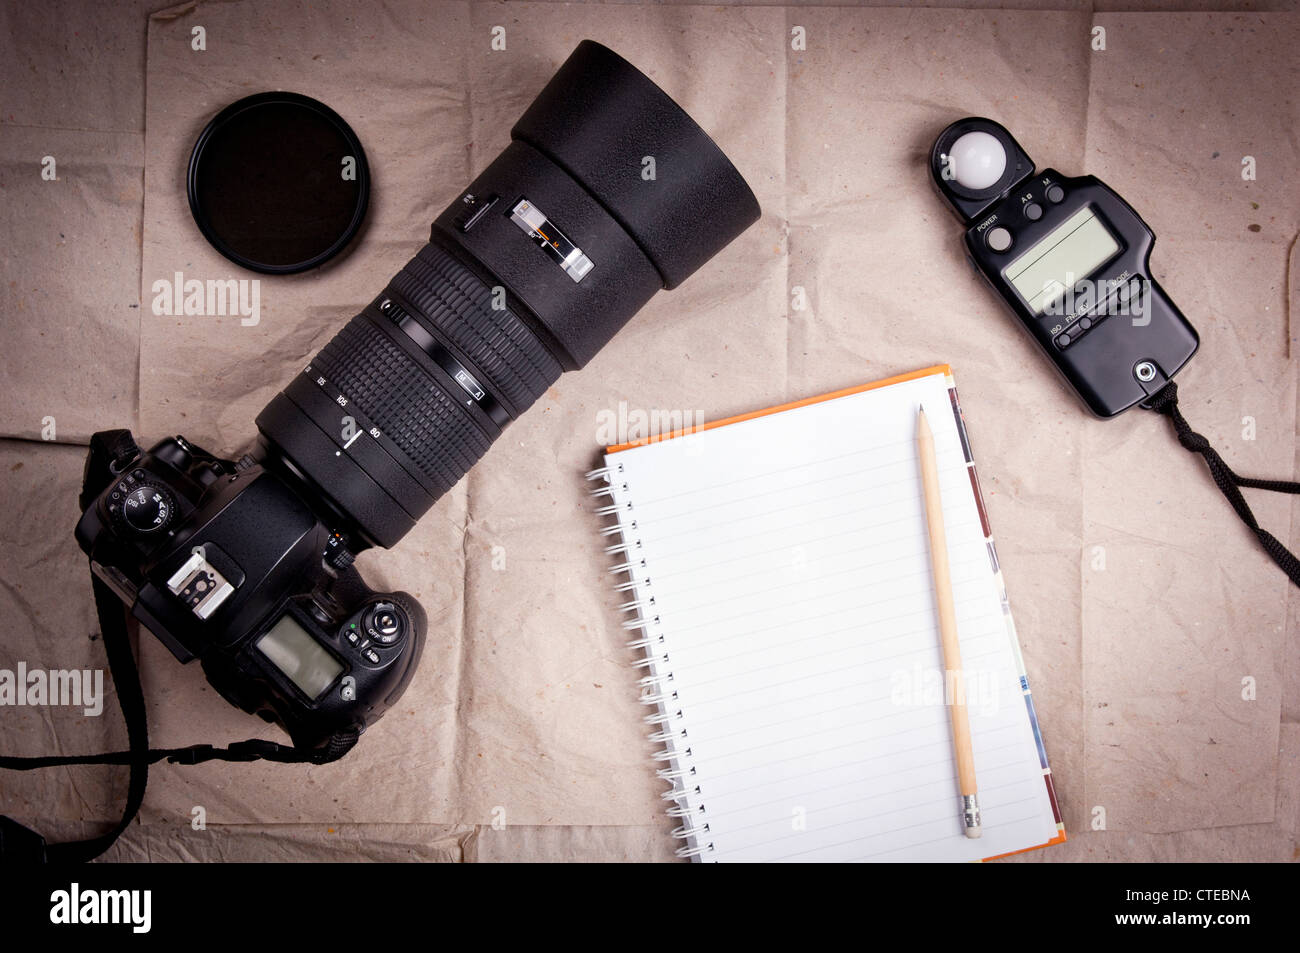 Lentes y cámaras digitales profesionales Fotografía de stock - Alamy